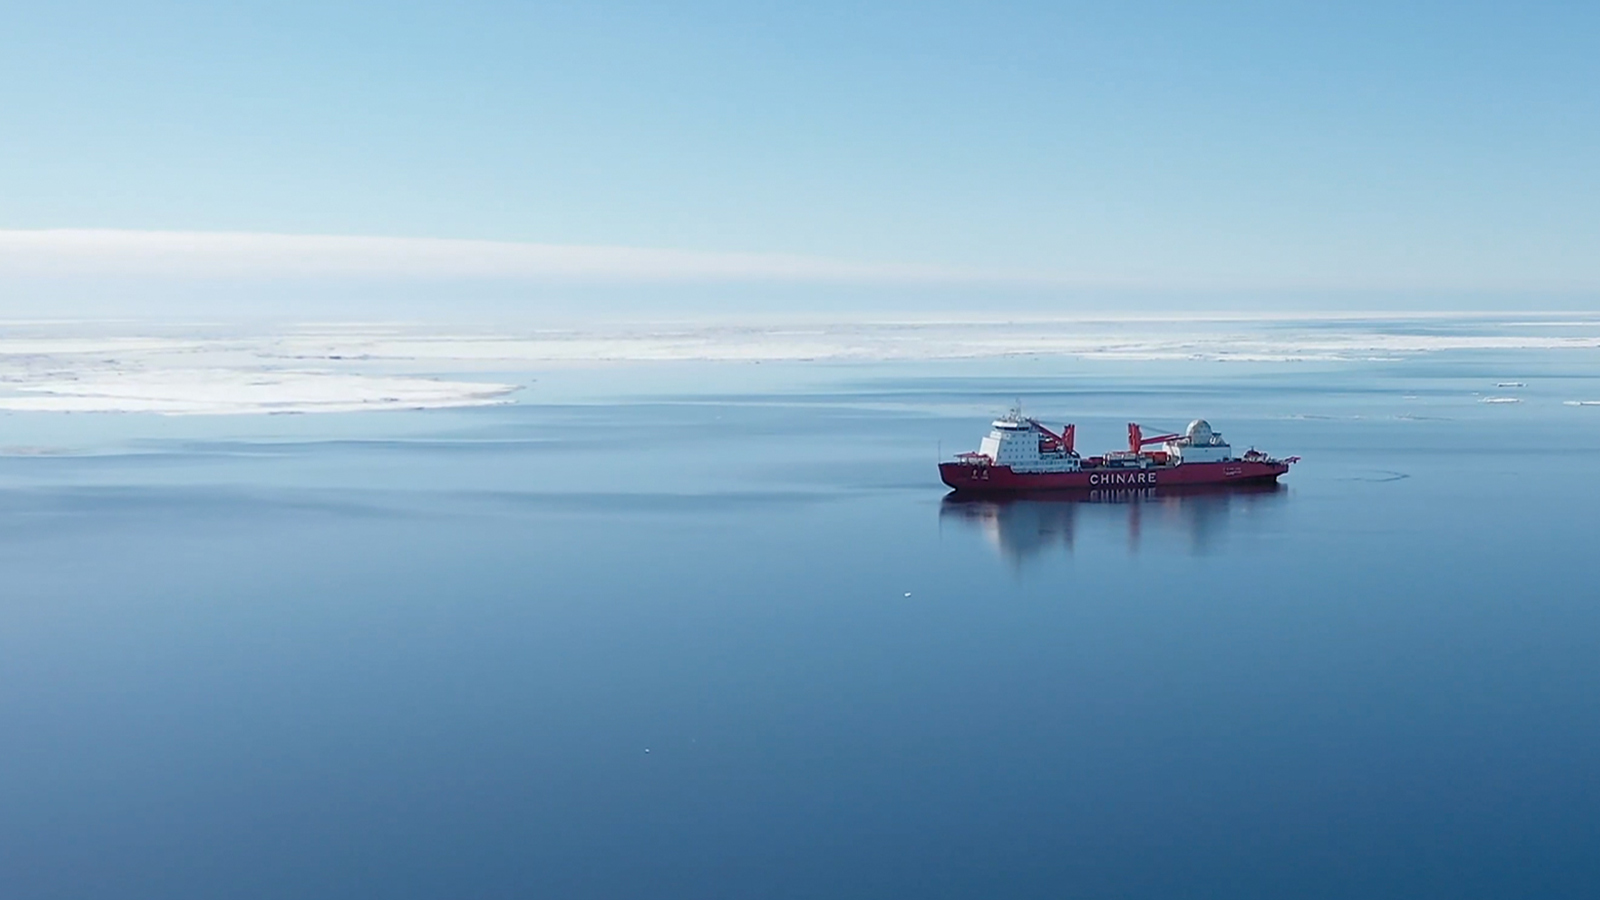 “雪龙2”号顺利返航，101人历时174天， 第38次南极科考圆满完成